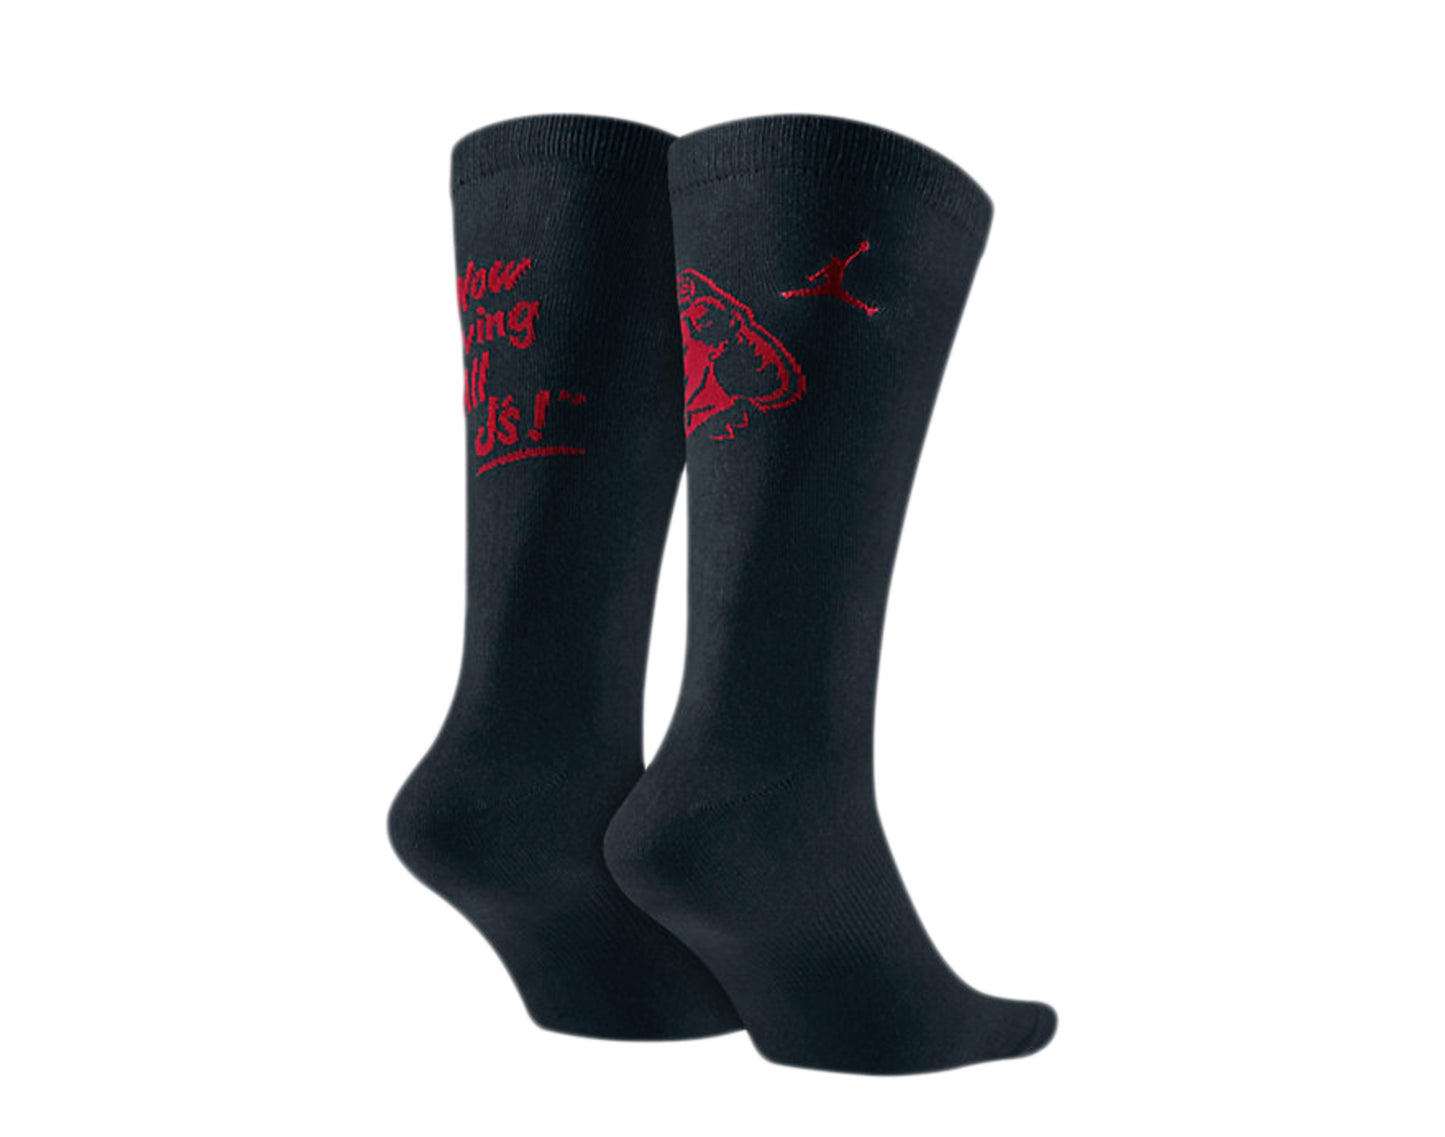 Nike Air Jordan Jumpman 5 Low Crew Black/Gym Red Socks 724928-010